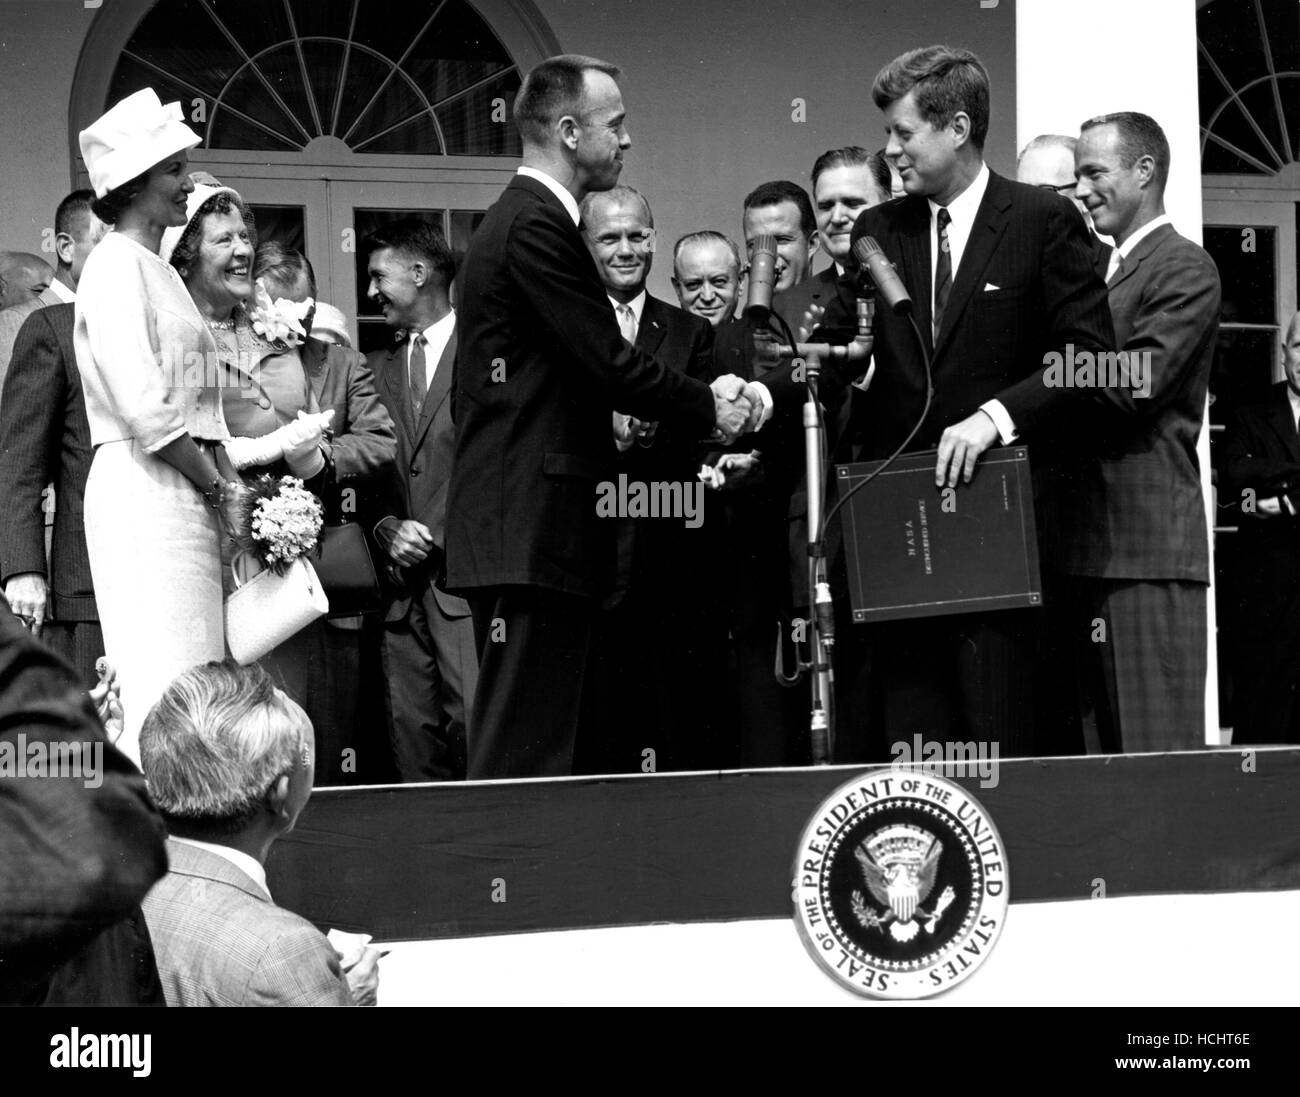 US-Präsident John F. Kennedy gratuliert Astronaut Alan B. Shepard, Jr., der erste Amerikaner im Weltall, auf seine historischen 5. Mai 1961 Ritt in die Freiheit 7-Sonde und stellt ihn mit der National Aeronautics and Space Administration (NASA) Distinguished Service Award in Washington, D.C. am 6. Mai 1961. Shepards Frau, Louise (links im weißen Kleid und Hut) und seine Mutter waren in Anwesenheit, sowie die anderen sechs Mercury Astronauten, darunter Oberst John H. Glenn, Jr. und anderen NASA-Funktionäre, einige sichtbar im Hintergrund... Credit: NASA mittels CNP - kein Draht-SERVICE - Foto: Na Stockfoto